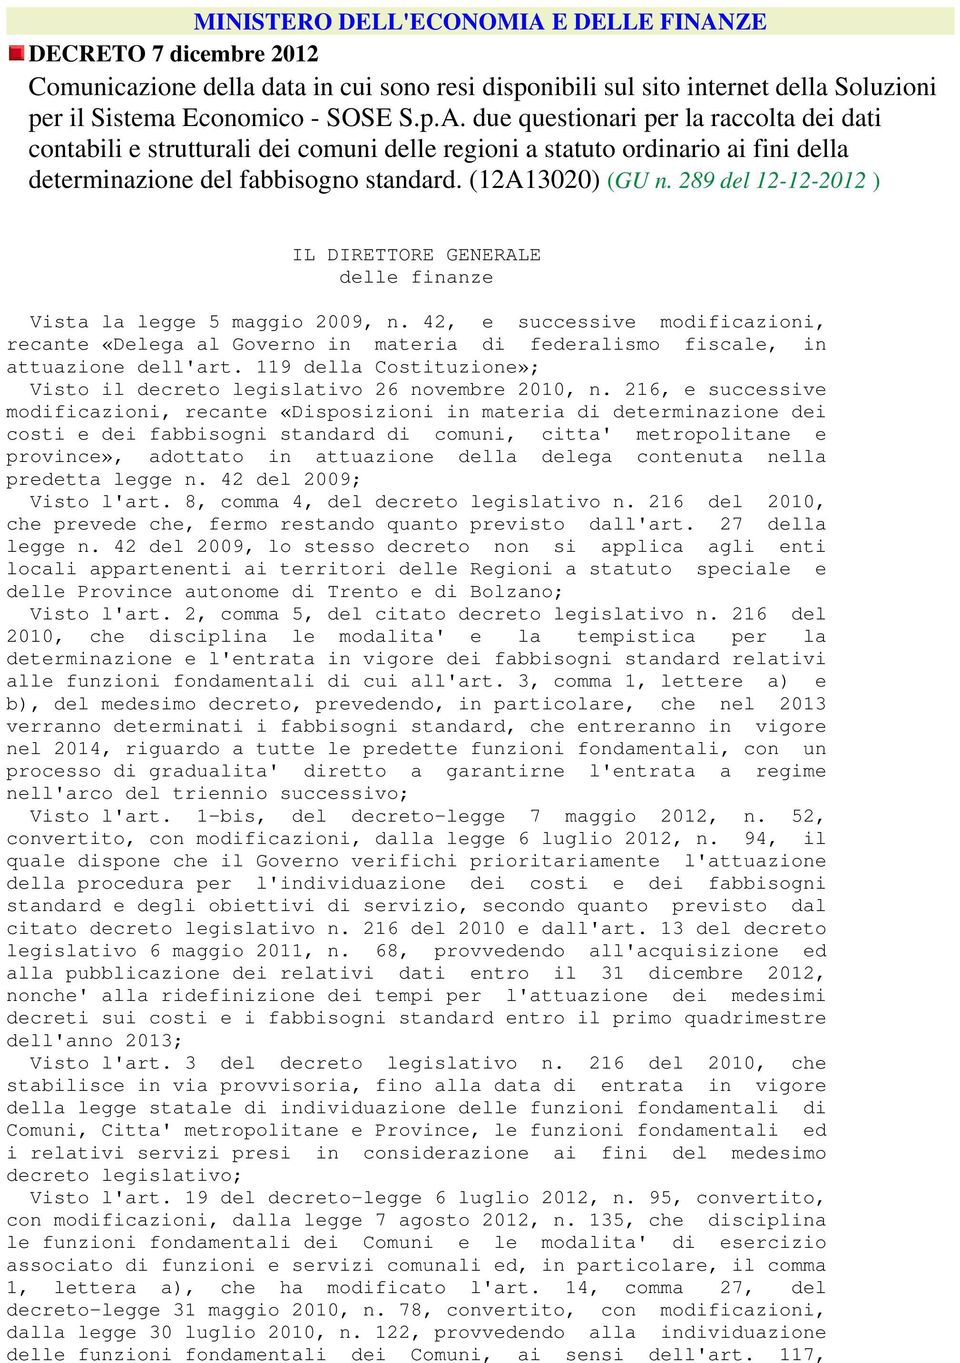 42, e successive modificazioni, recante «Delega al Governo in materia di federalismo fiscale, in attuazione dell'art. 119 della Costituzione»; Visto il decreto legislativo 26 novembre 2010, n.